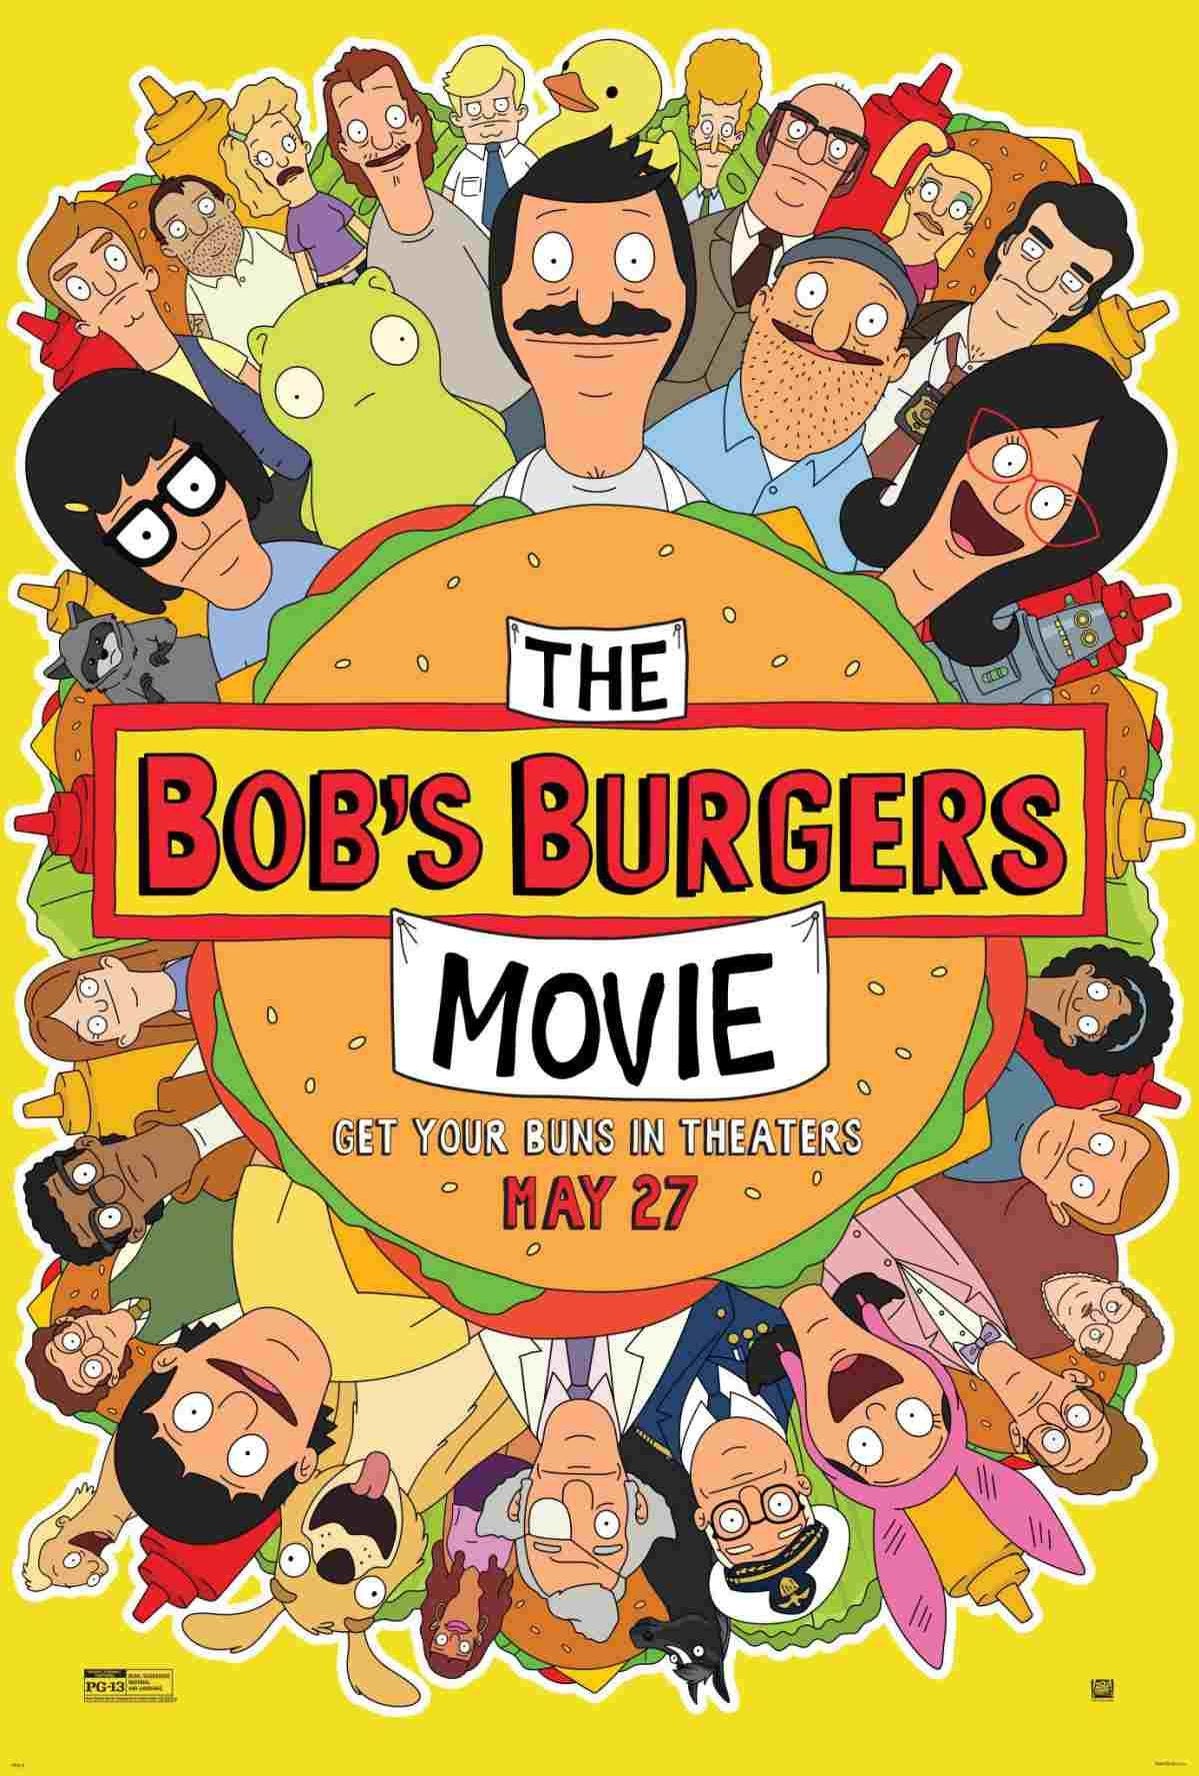 bobs-burgers-movie-posters-005.jpg